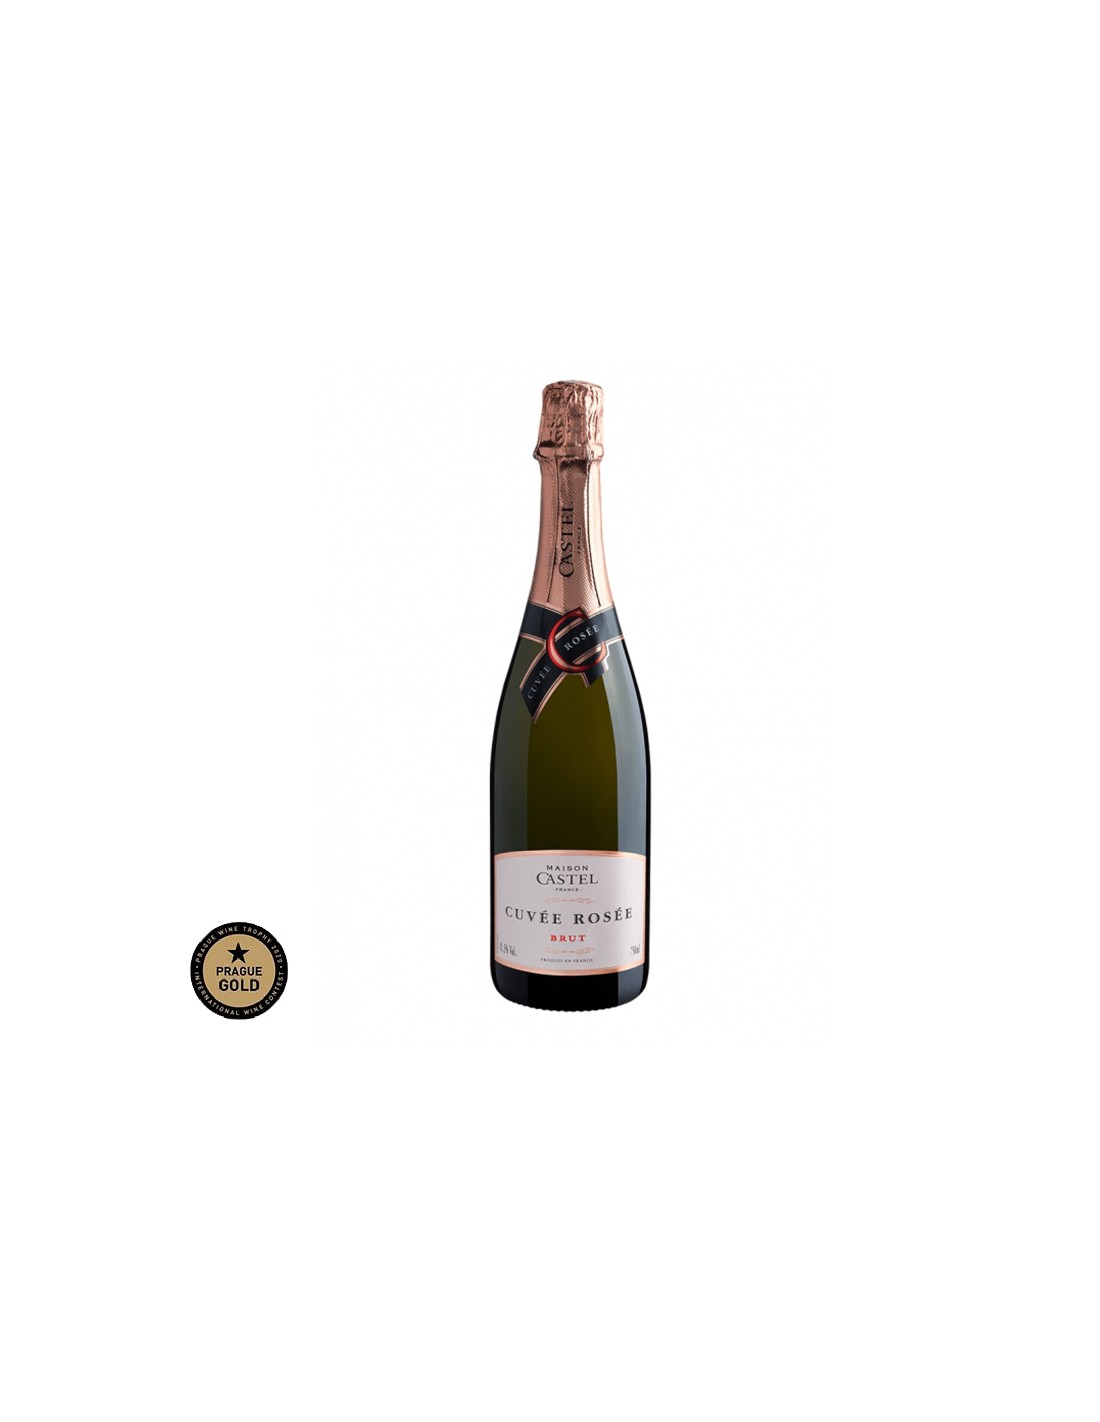 Vin spumant roze brut Maison Castel Cuvée Rosée, 0.75L, 11.5% alc., Franta alcooldiscount.ro